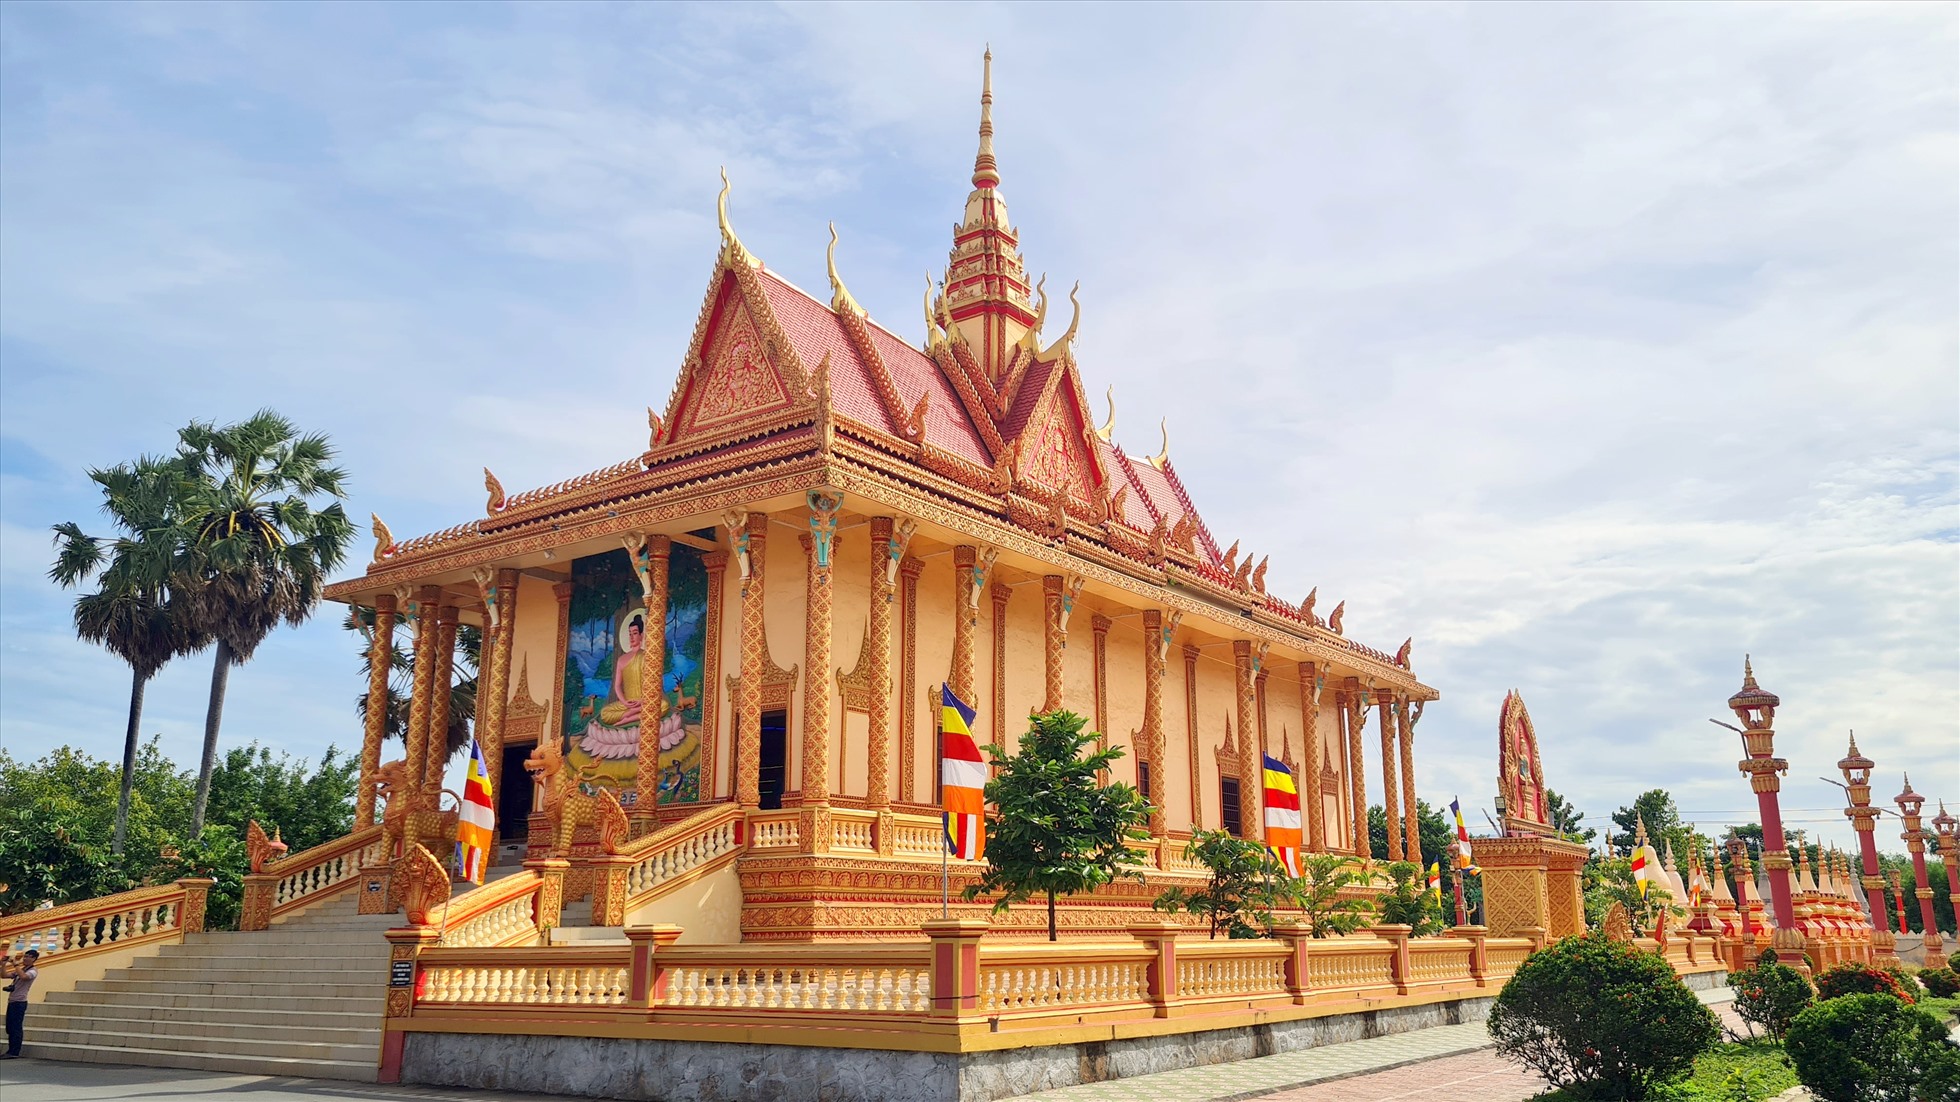 Chùa Xiên Cán được Hiệp hội Du lịch ĐBSCL công nhận là điểm đến tiêu biểu ĐBSCL vào ngày 5.10. Đây là ngôi chùa có kiến trúc đẹp trong quần thể kiến trúc chùa Khmer Nam bộ.